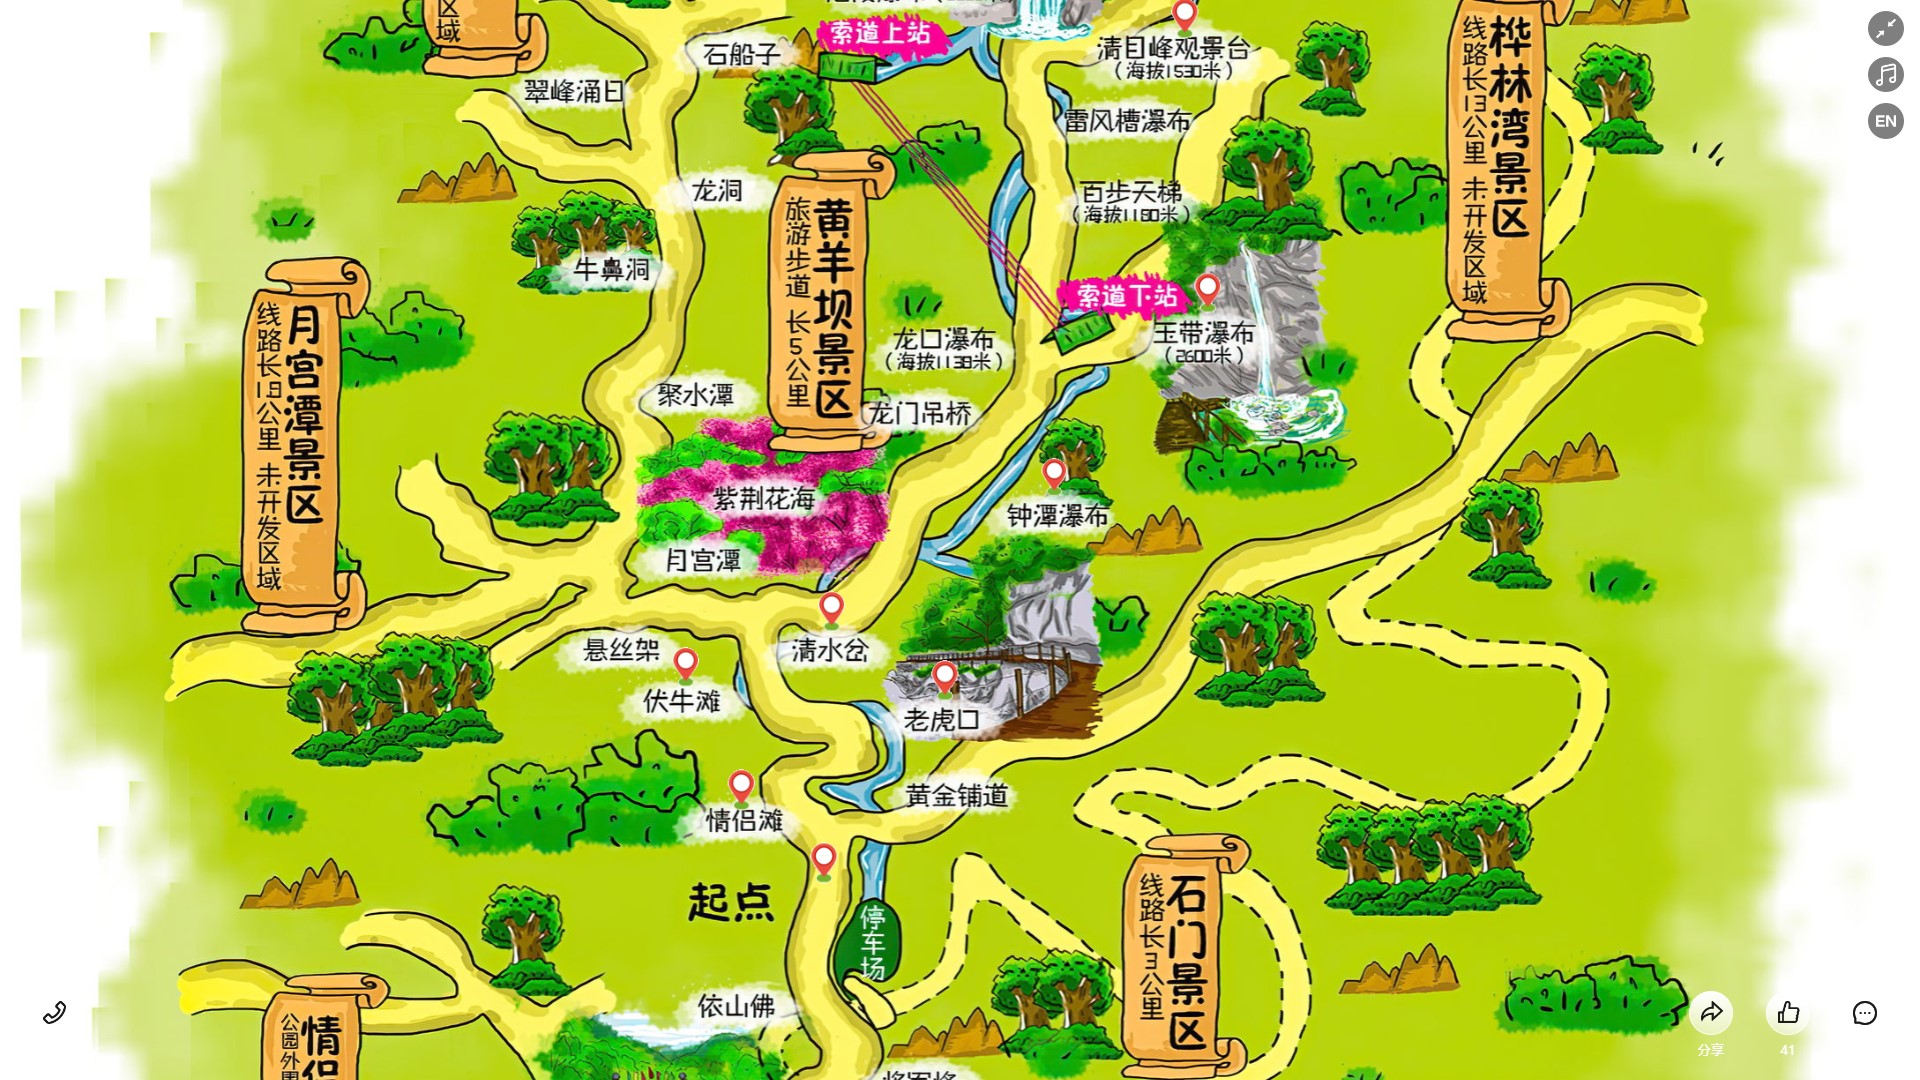 熊口镇景区导览系统